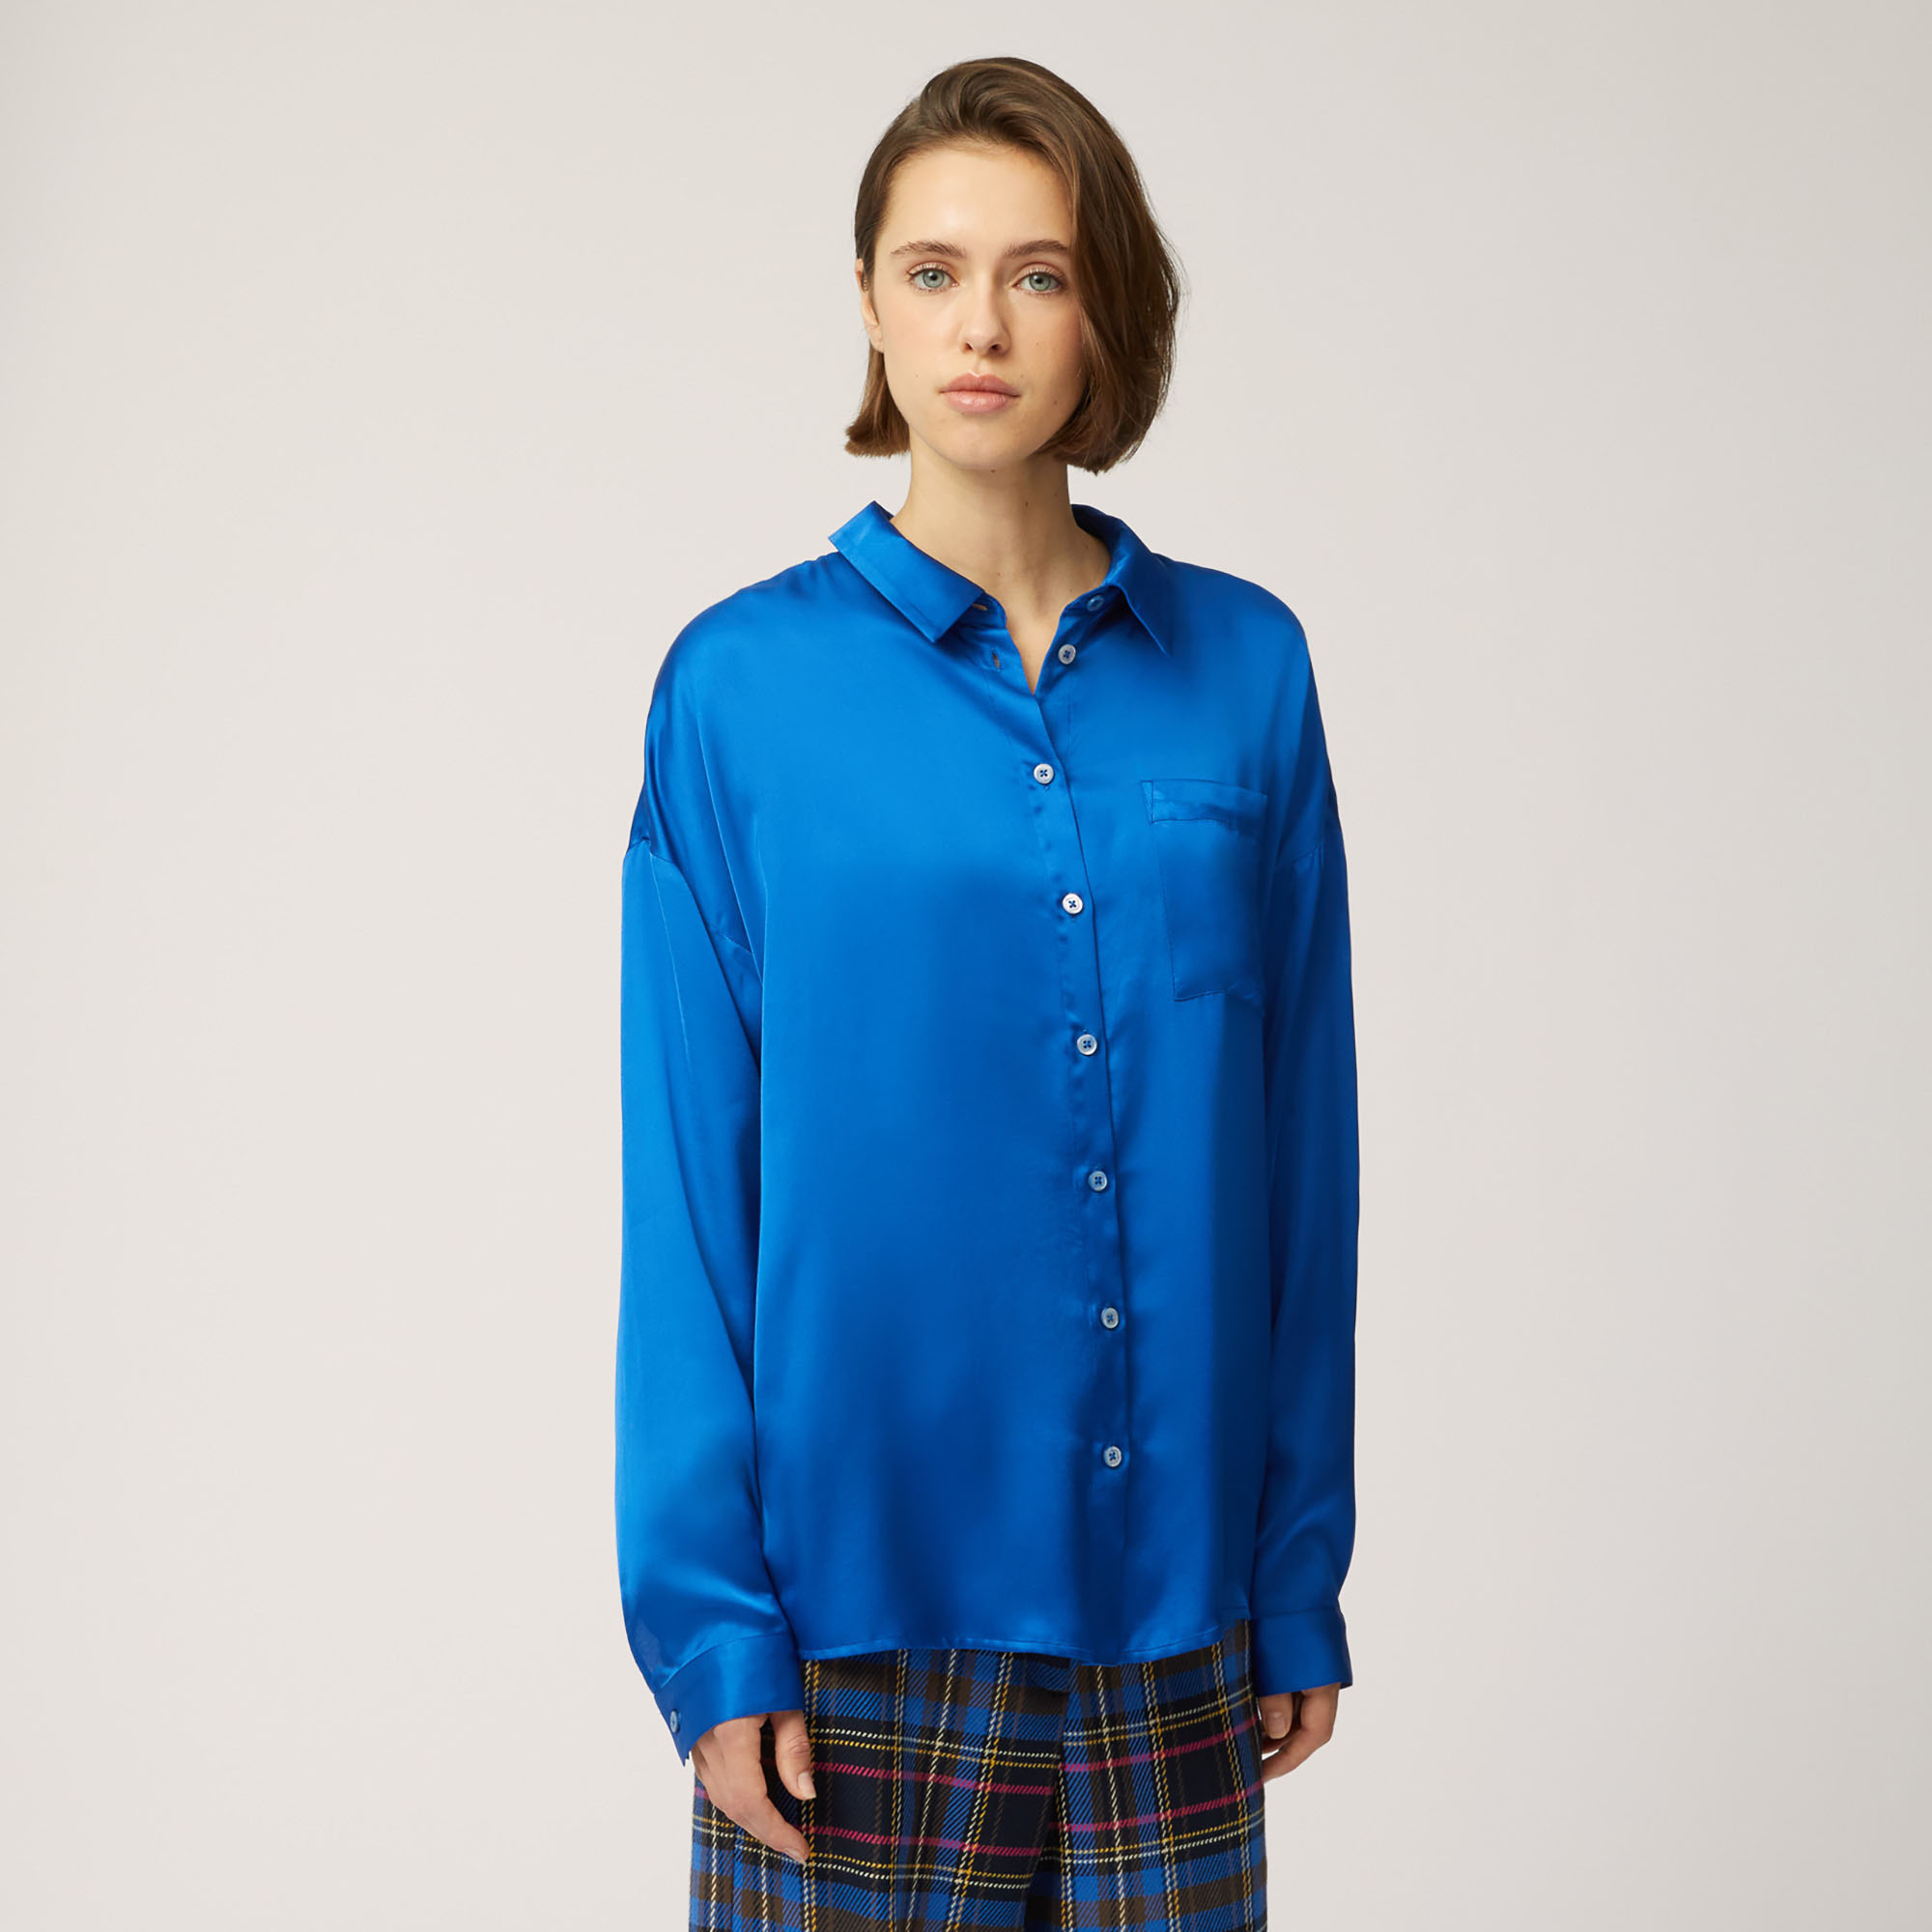 Camisa Cuadrada Con Botones En La Espalda, Azul cobalto, large